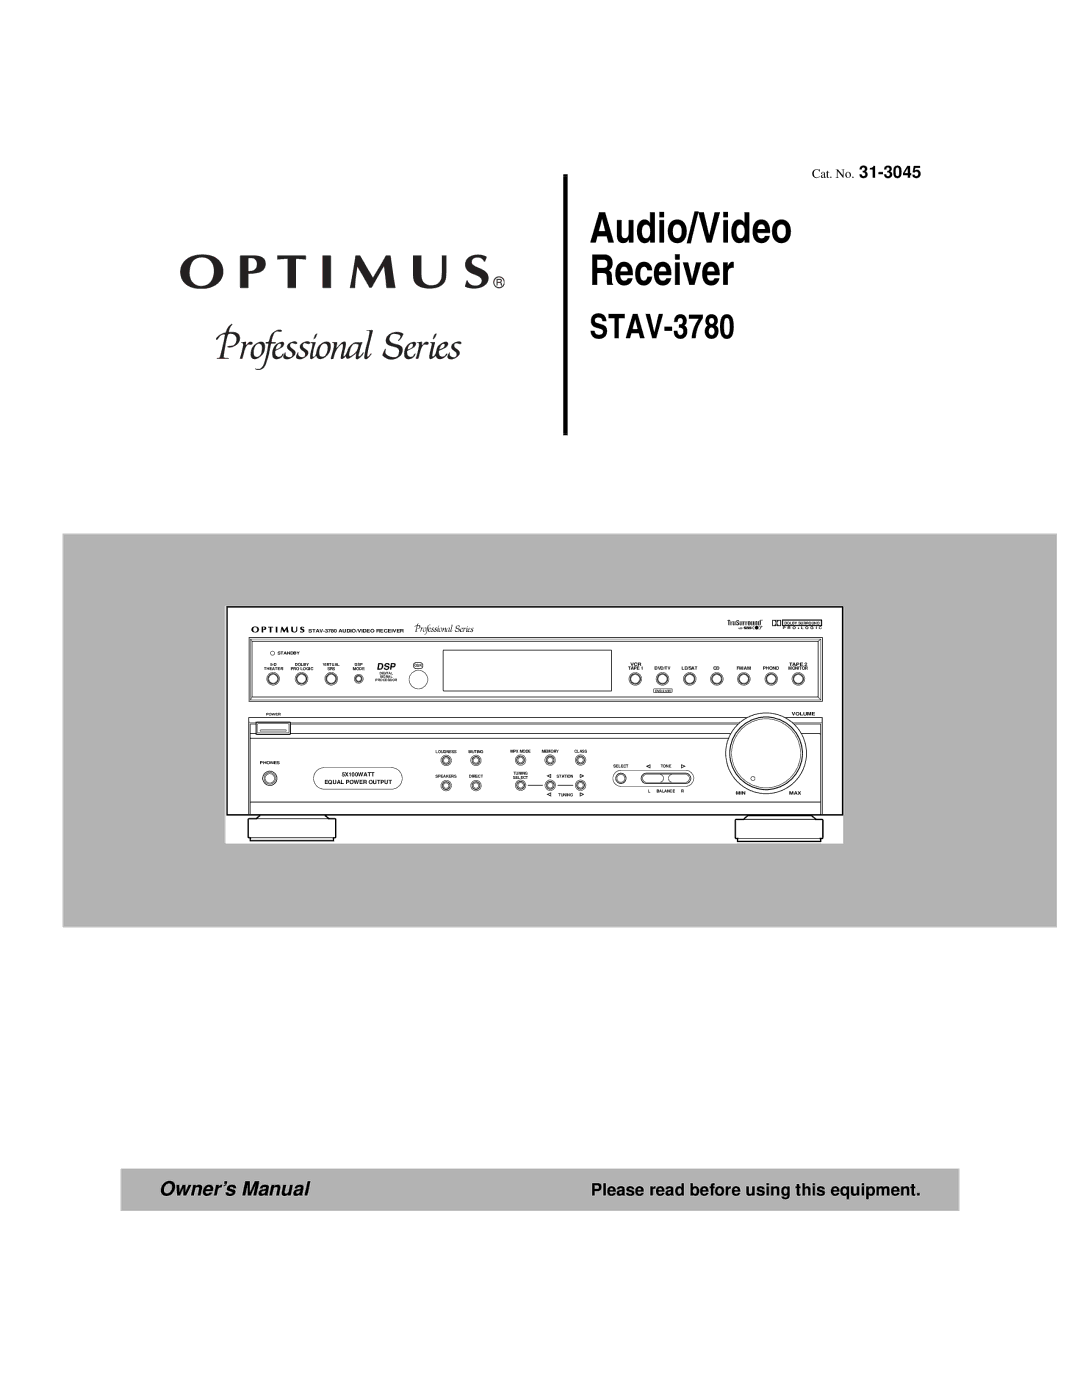 Optimus STAV-3780 owner manual Audio/Video Receiver 